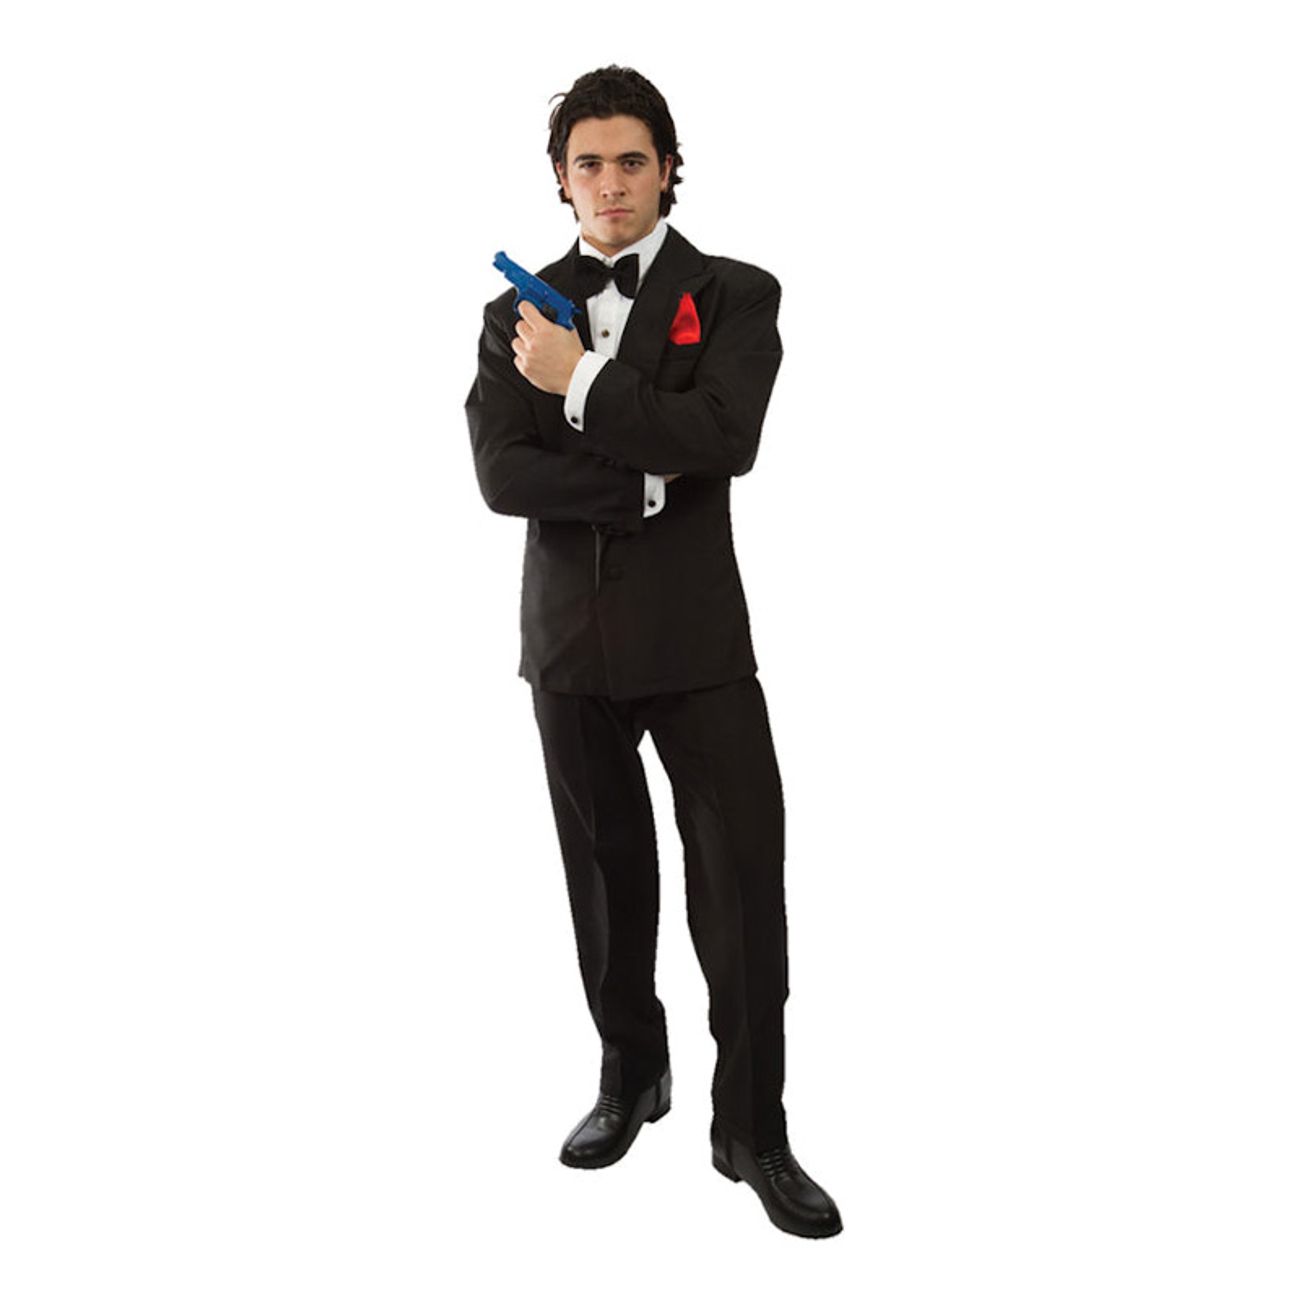 Auckland Saucer Erfaren person James Bond Kostume | Partykungen